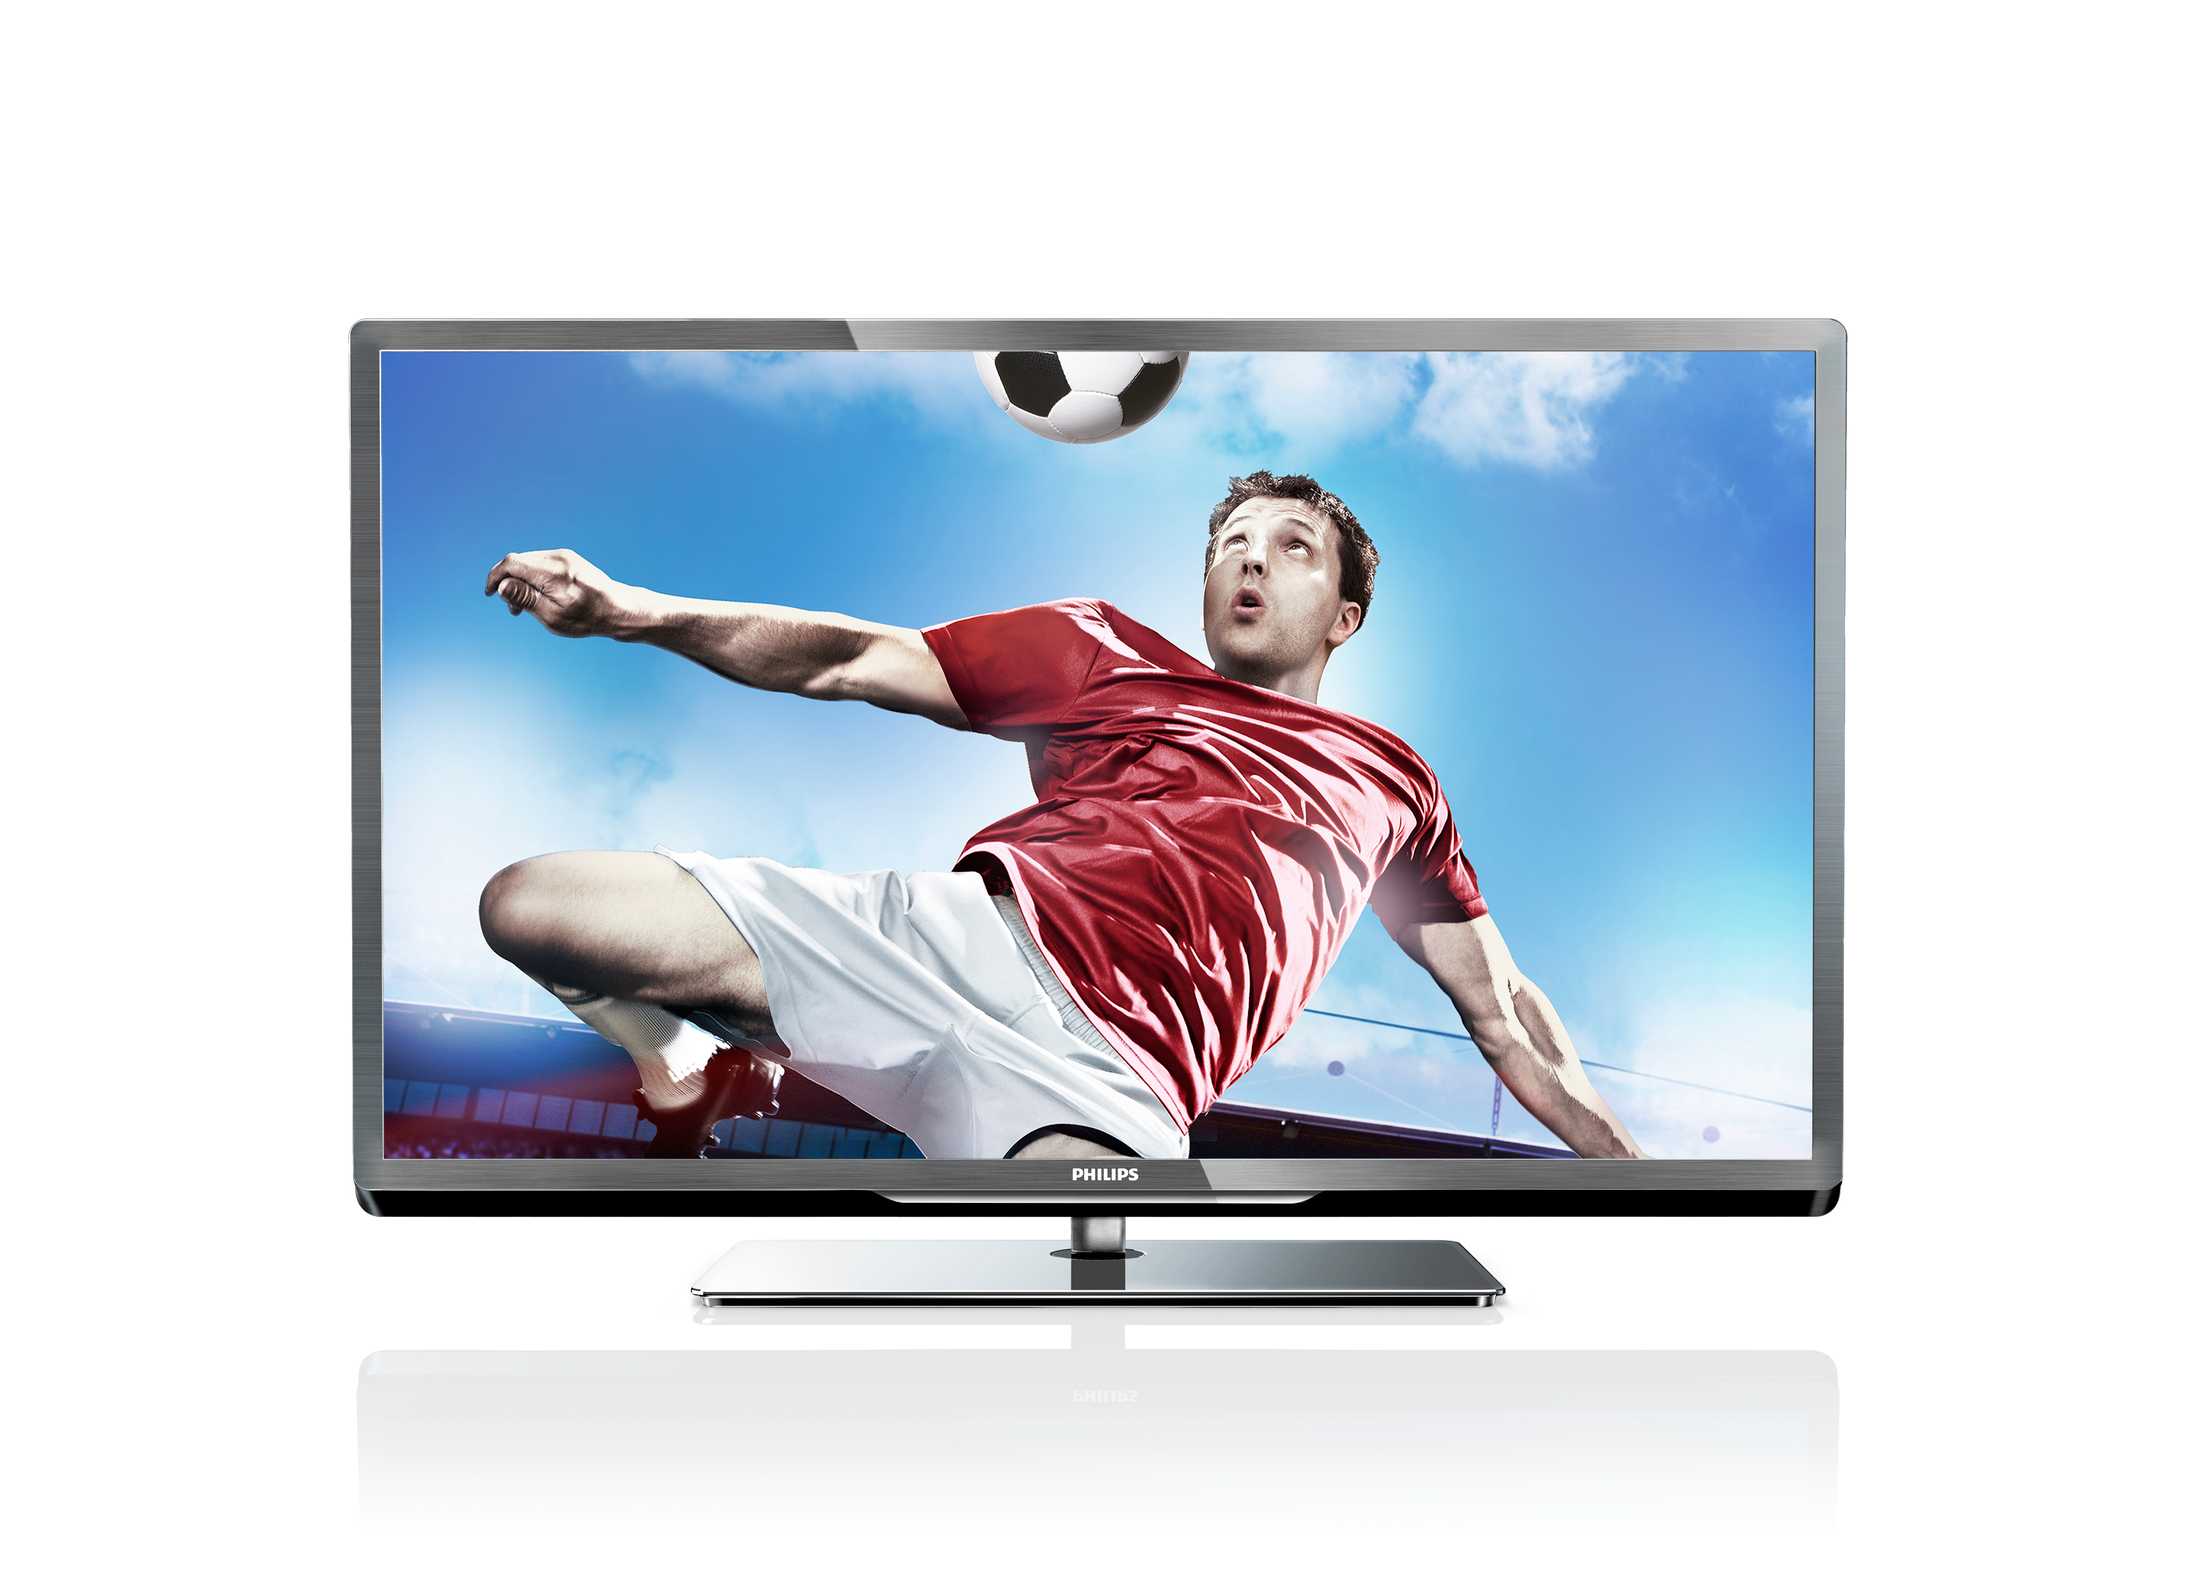 Philips 42pfl5038t - купить , скидки, цена, отзывы, обзор, характеристики - телевизоры